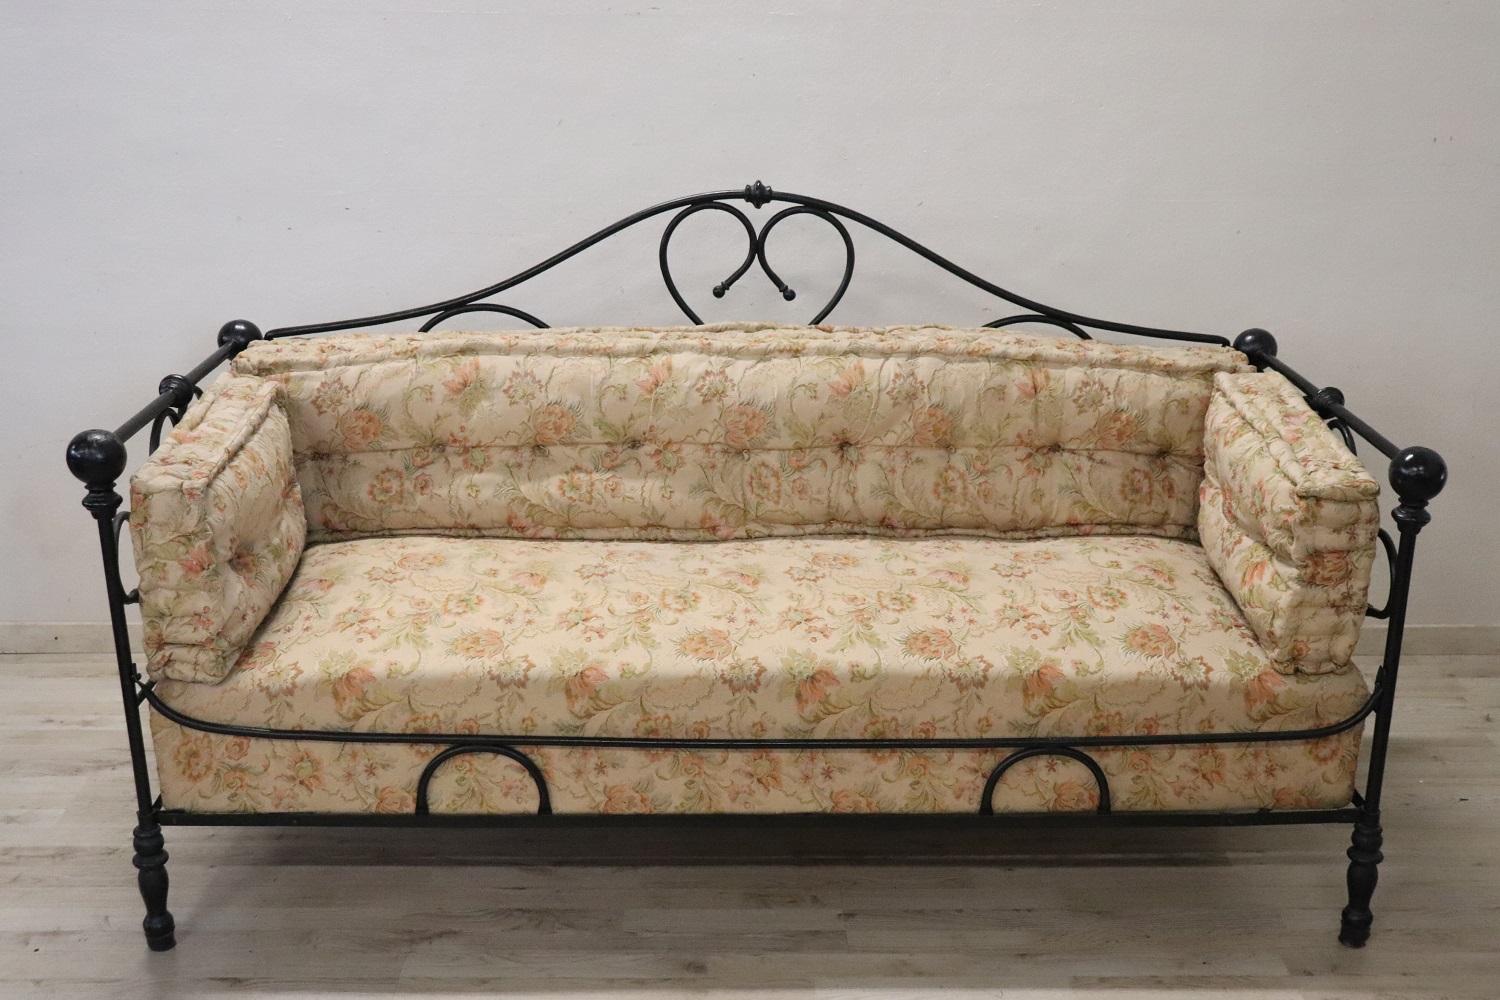 Rare canapé italien antique de grande taille, fin du 19e siècle. Le canapé est en fer massif. Le fer présente une décoration raffinée et élaborée avec des boucles et des volutes. La décoration est présente de chaque côté, il est donc possible de